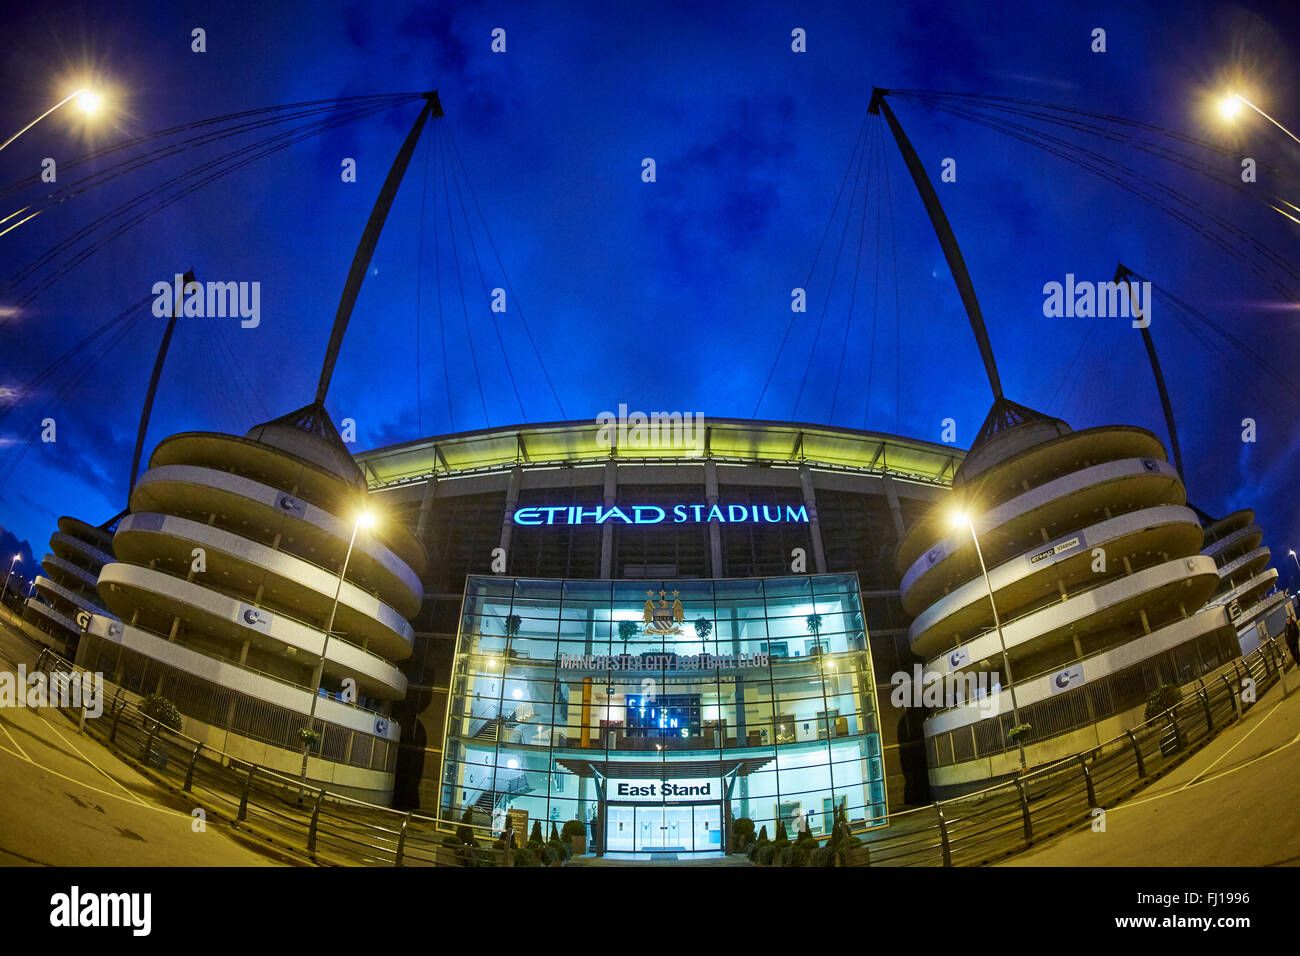 La ville de Manchester Stadium de Manchester, Angleterre, également connu sous le nom de Etihad Stadium, est le terrain d'accueil Banque D'Images